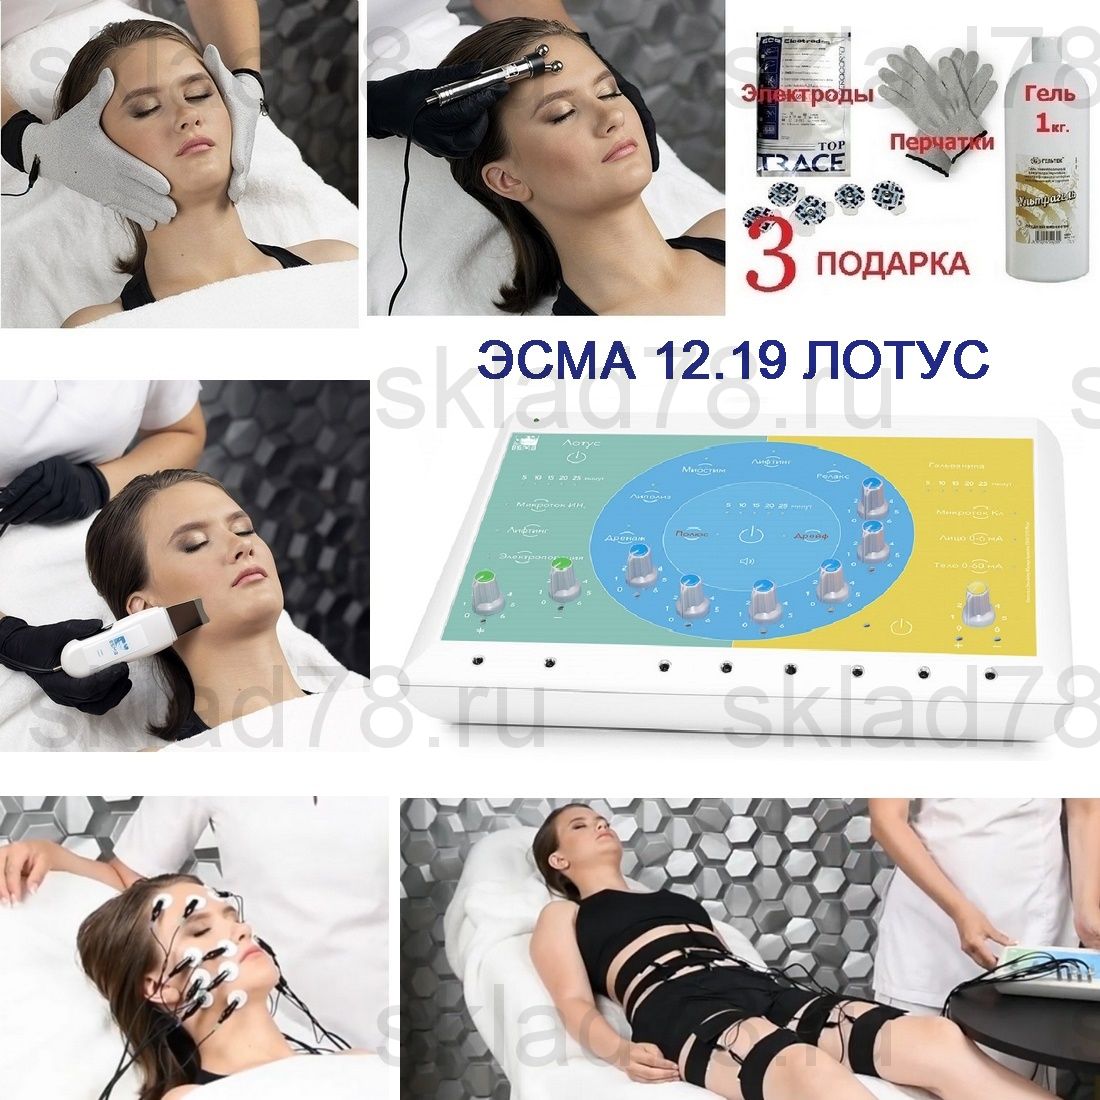 Физиотерапевтический комплекс ЭСМА 12.19 модель ЛОТУС